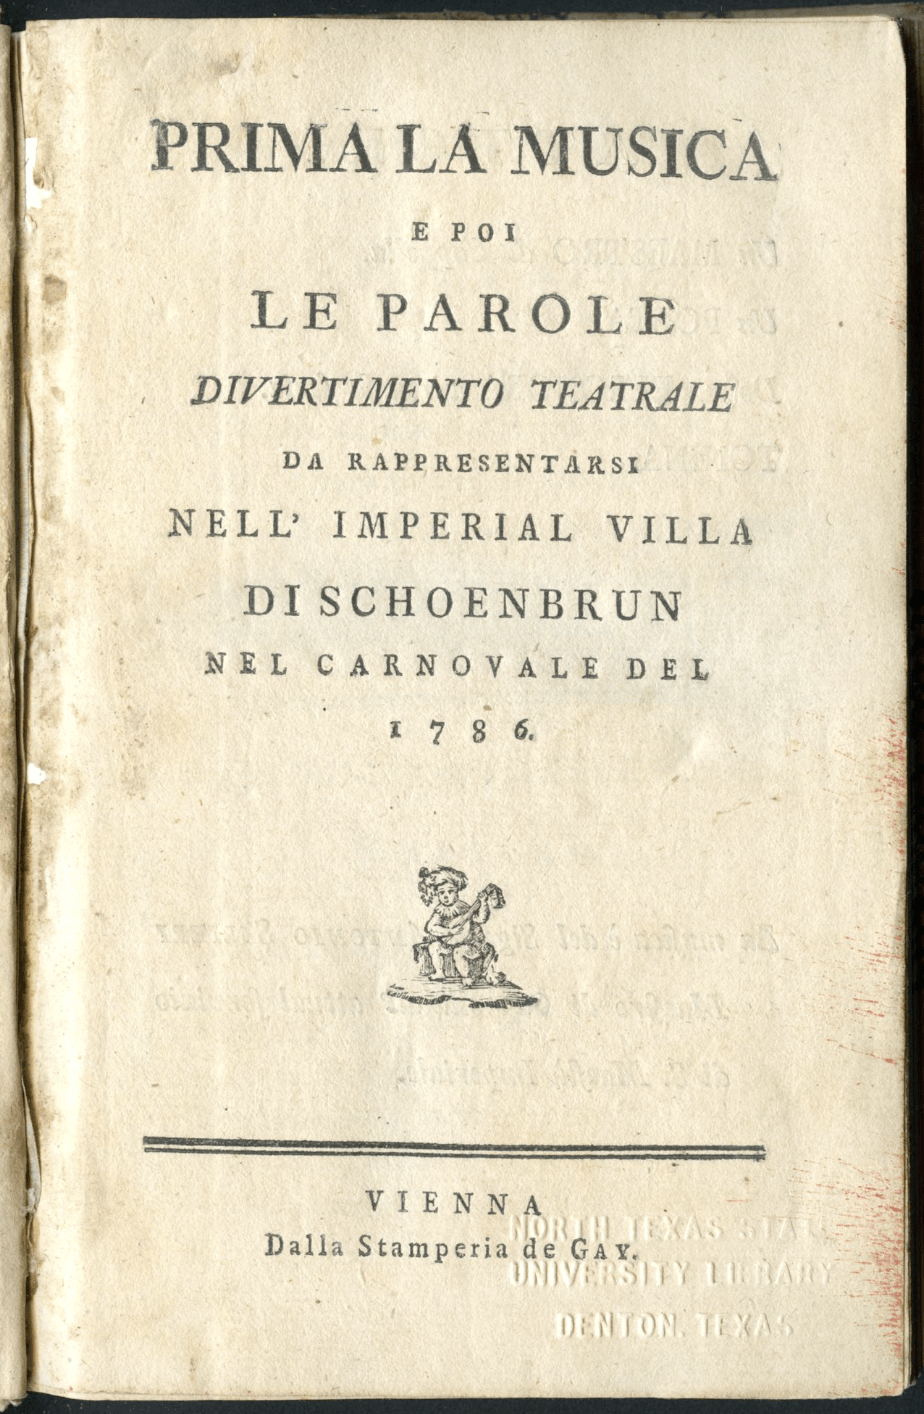 Giovanni Battista Casti - Opera Libretto